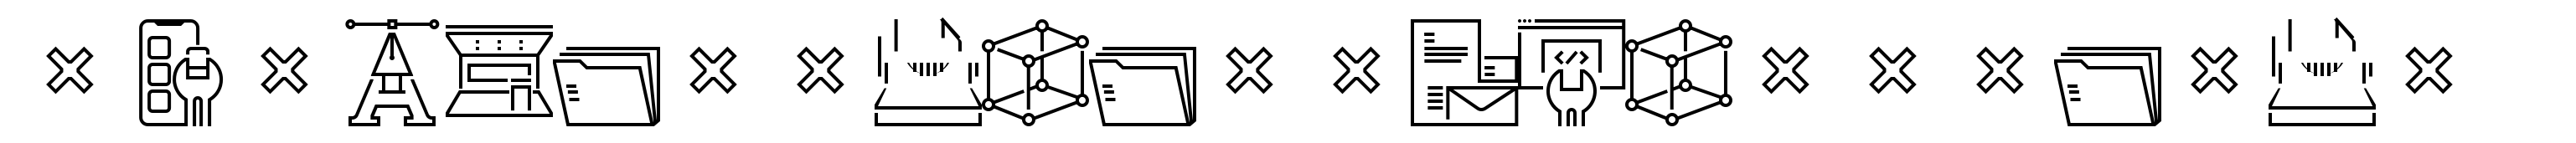 Square Line Icons Design